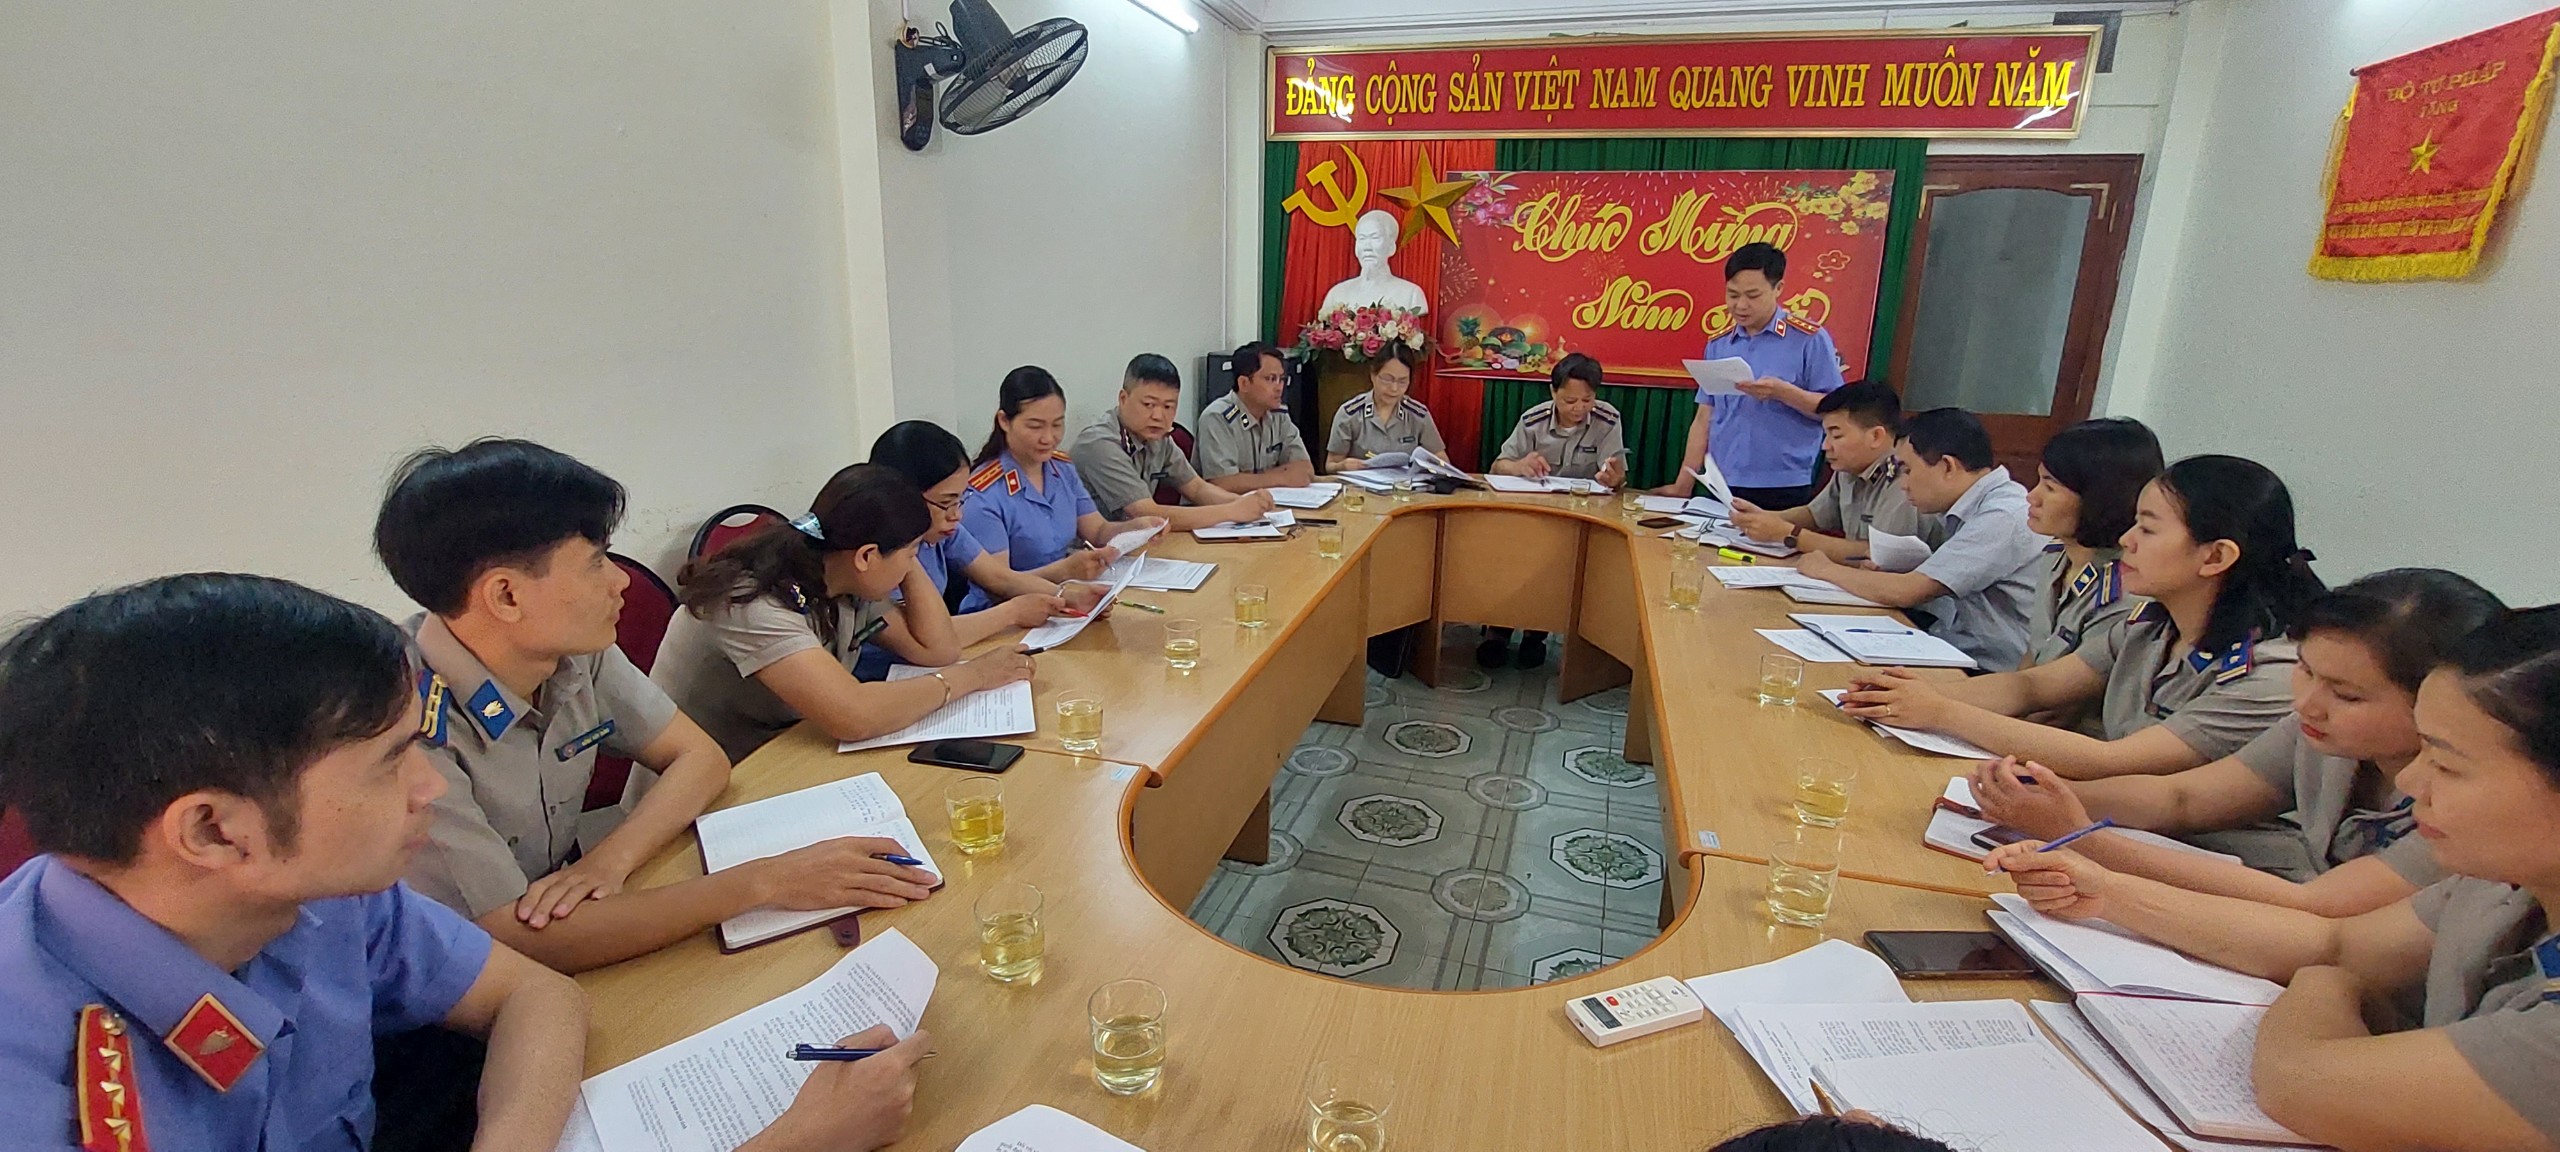 Cục Thi hành án dân sự và Viện kiểm sát nhân dân phối hợp kiểm tra công tác thi hành án dân sự tại Chi cục THADS thành phố Cao Bằng